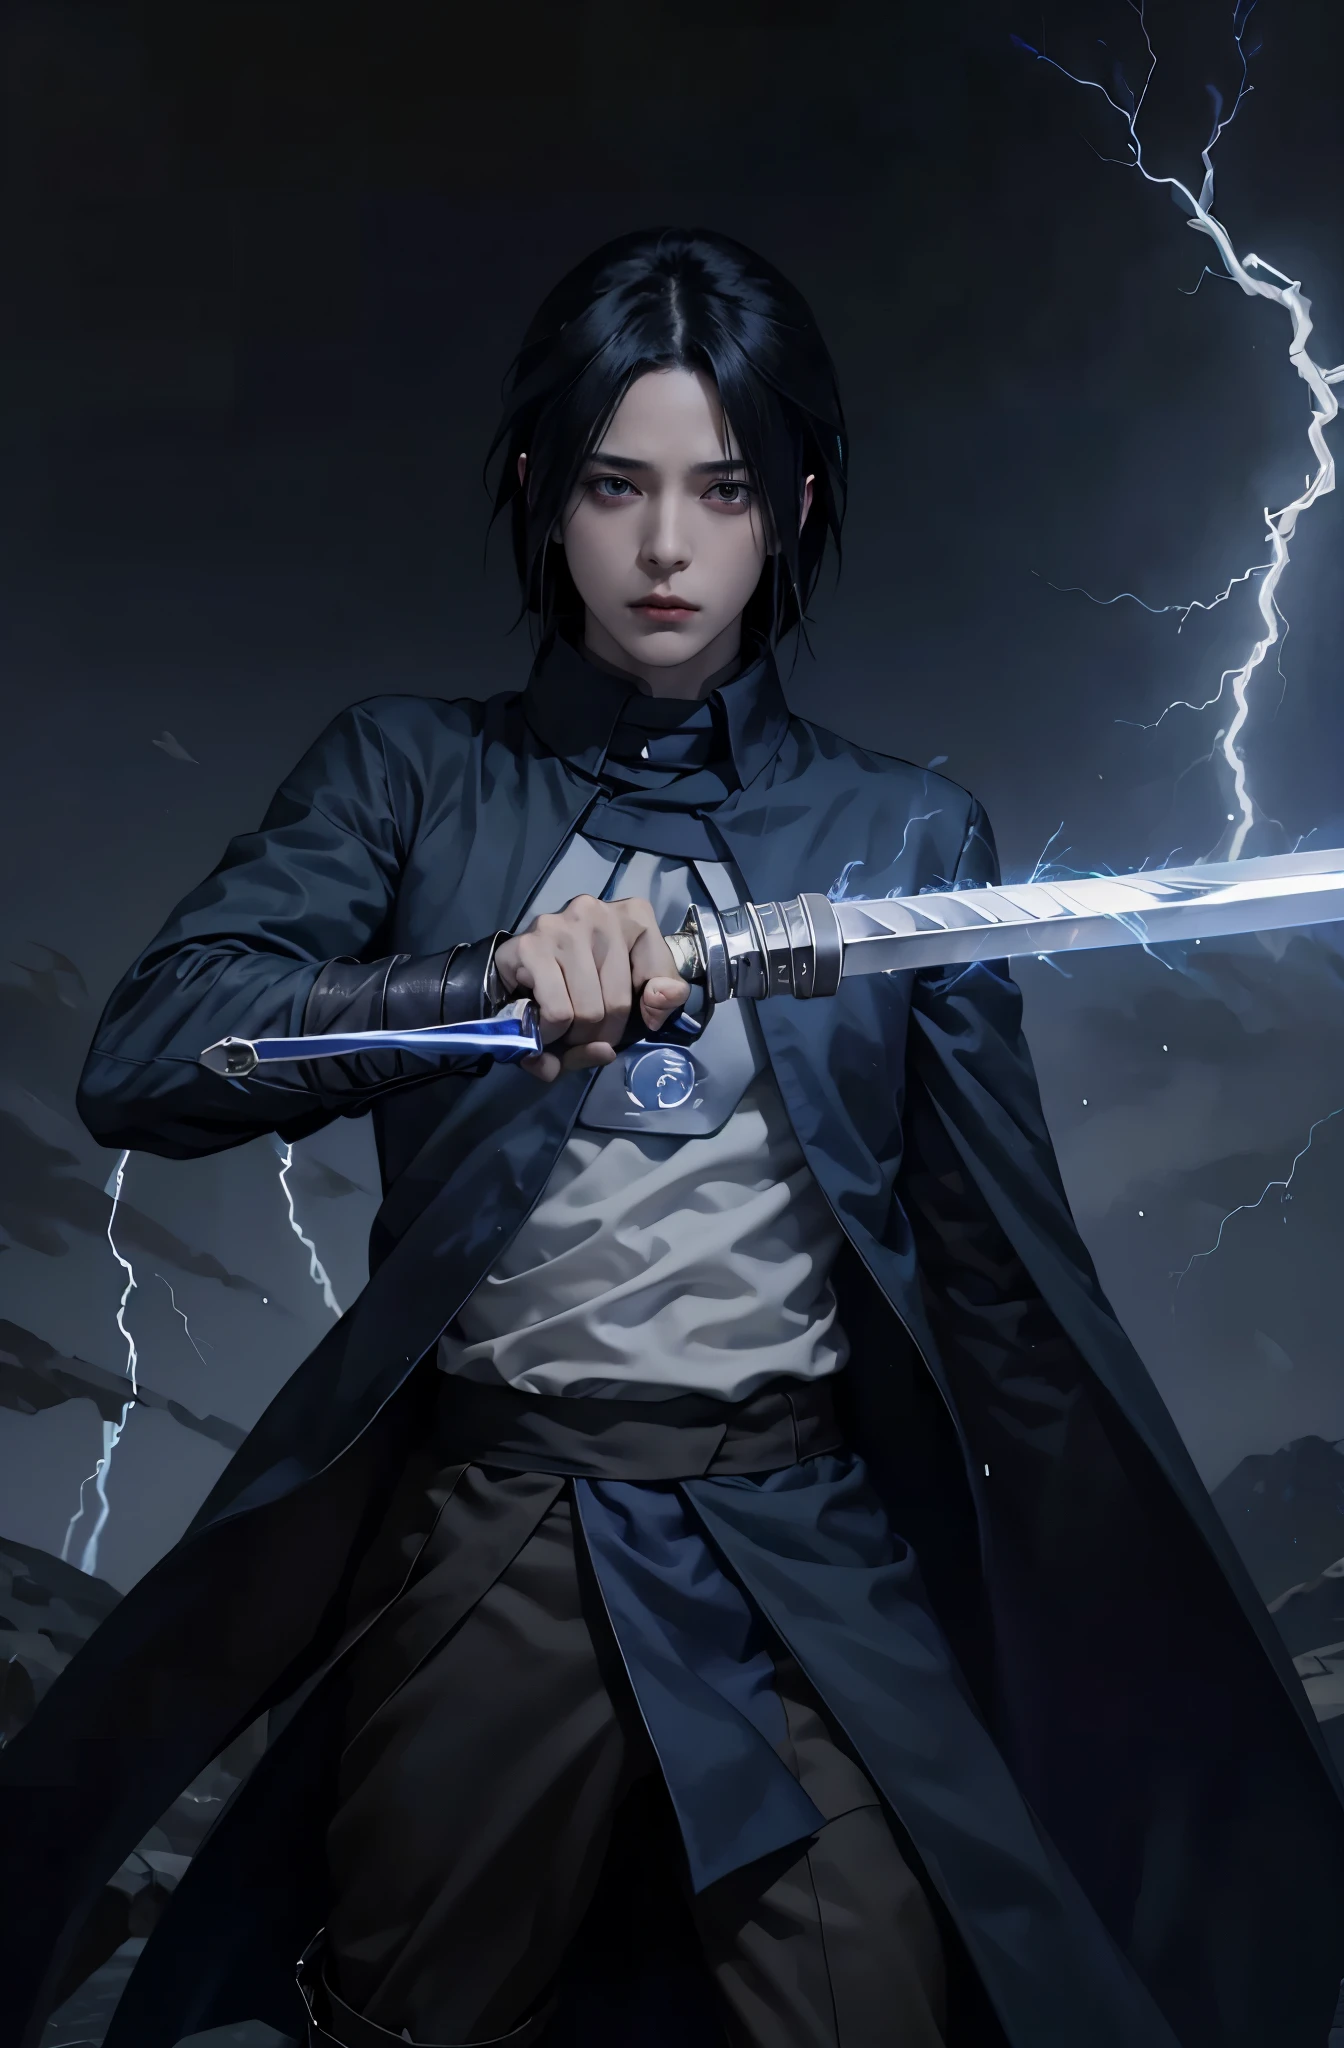 1male, Sasuke Uchiha sosteniendo una espada hacia el espectador., cuerpo completo, relámpago azul VFX in the sword, relámpago azul , glowing relámpago azul sword, abrigo negro